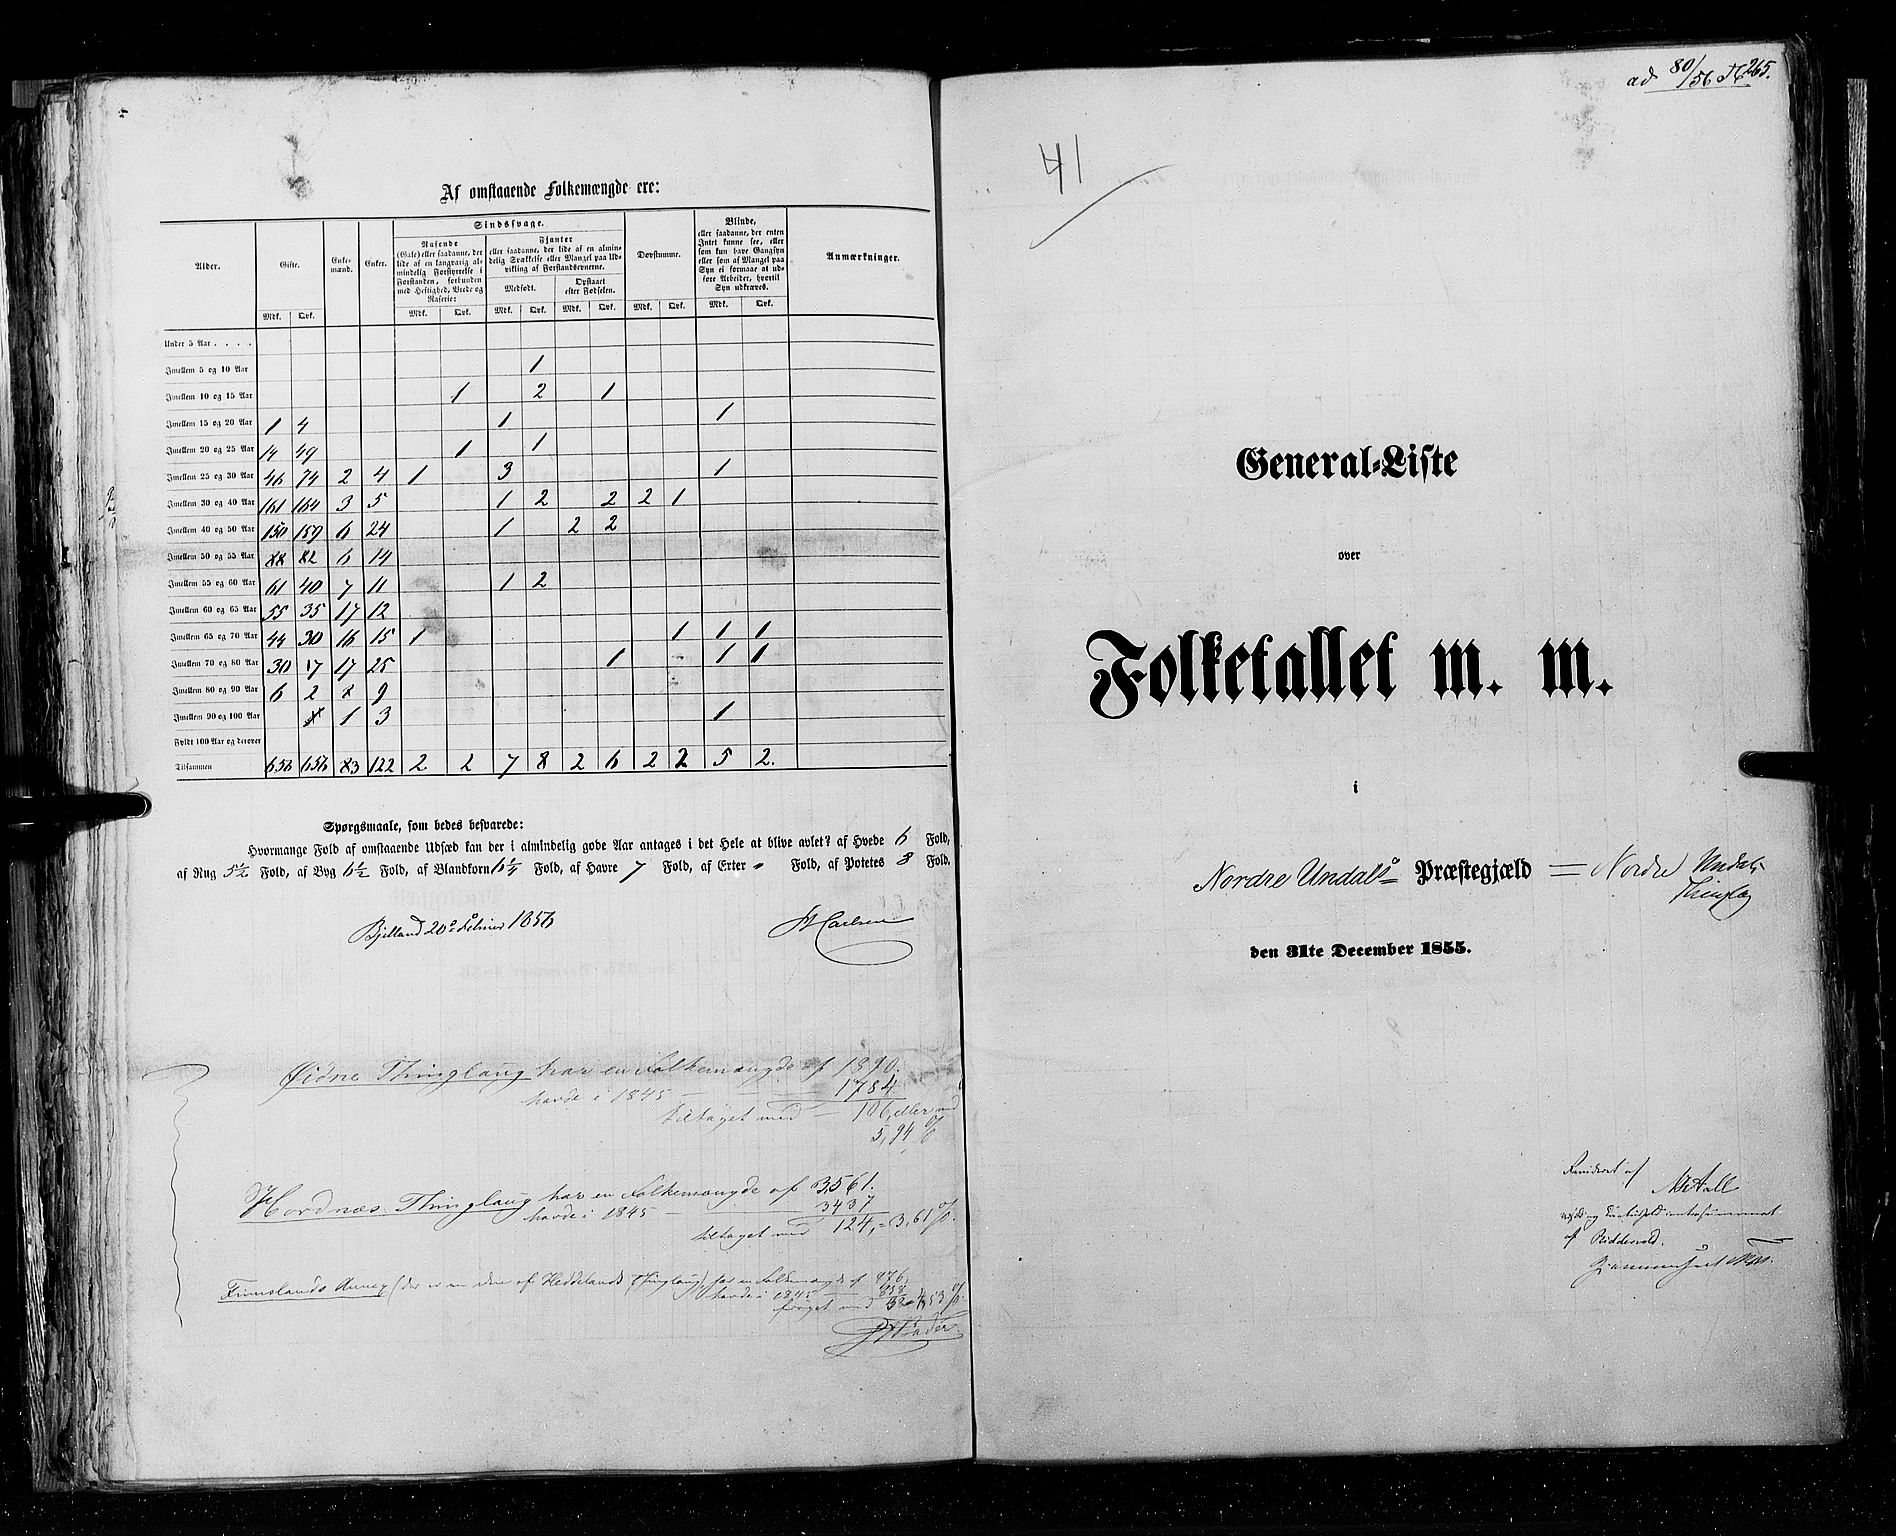 RA, Census 1855, vol. 3: Bratsberg amt, Nedenes amt og Lister og Mandal amt, 1855, p. 265